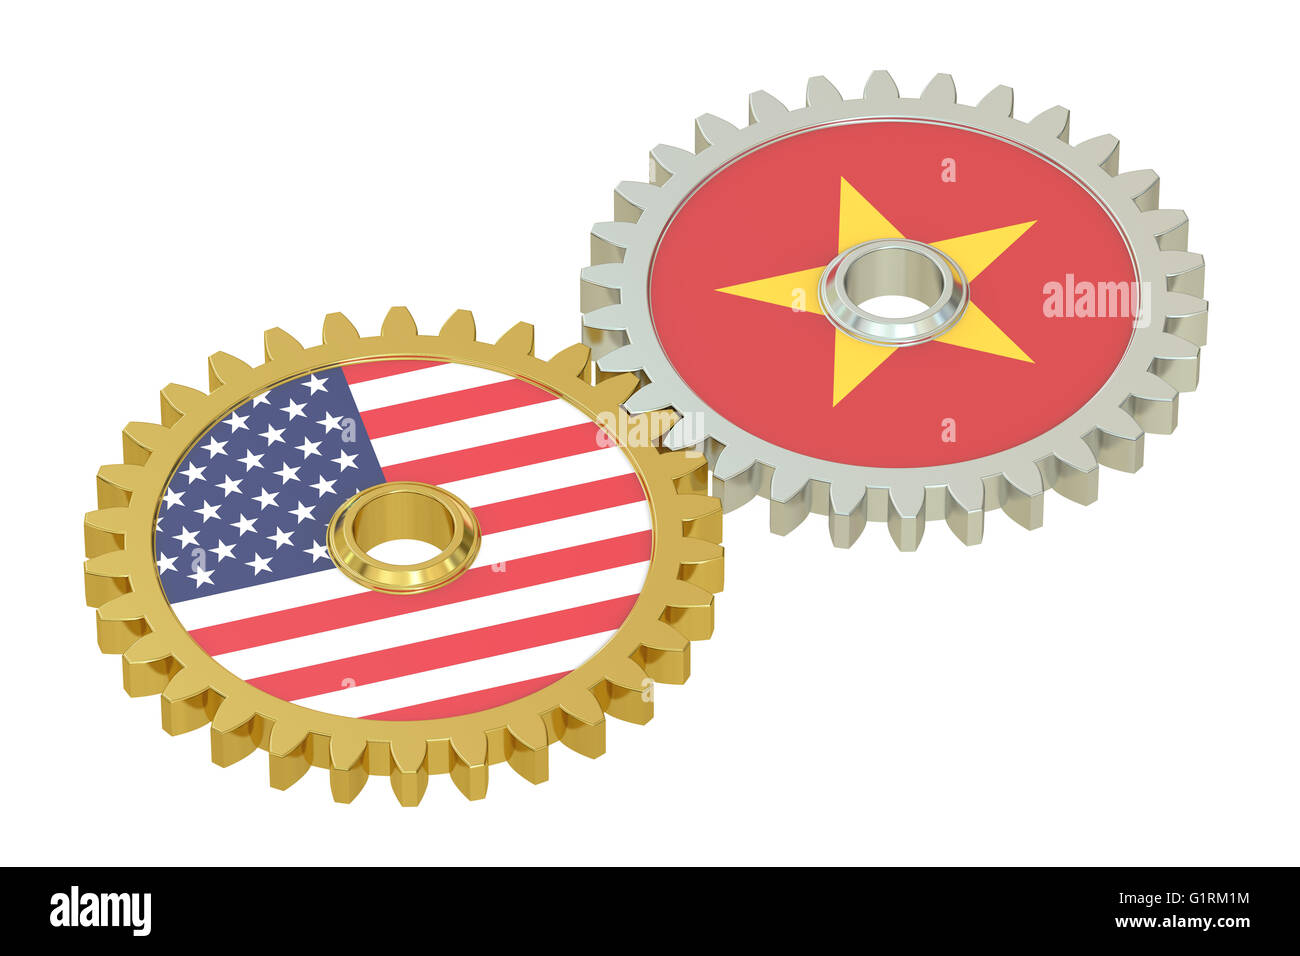 Il Vietnam e Stati Uniti relazioni, 3D rendering isolati su sfondo bianco Foto Stock